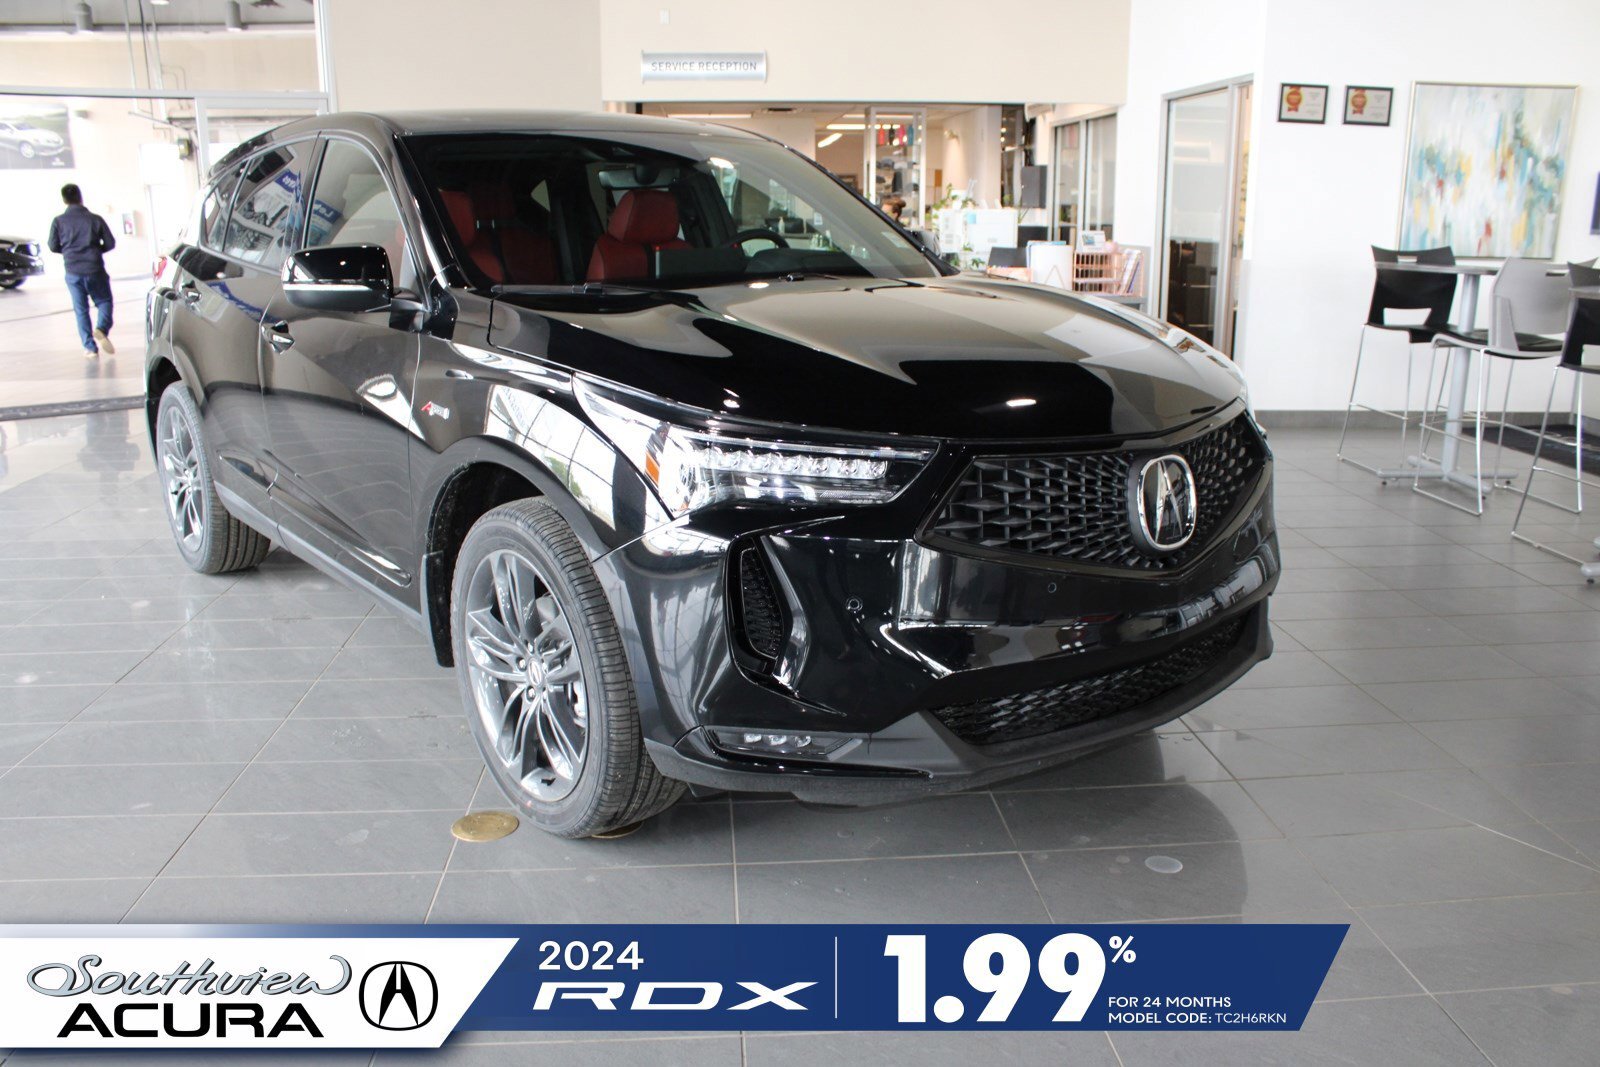 2024 Acura RDX A-Spec | $2,000 Rebate | 1.99% oac | $2,000 Rebate